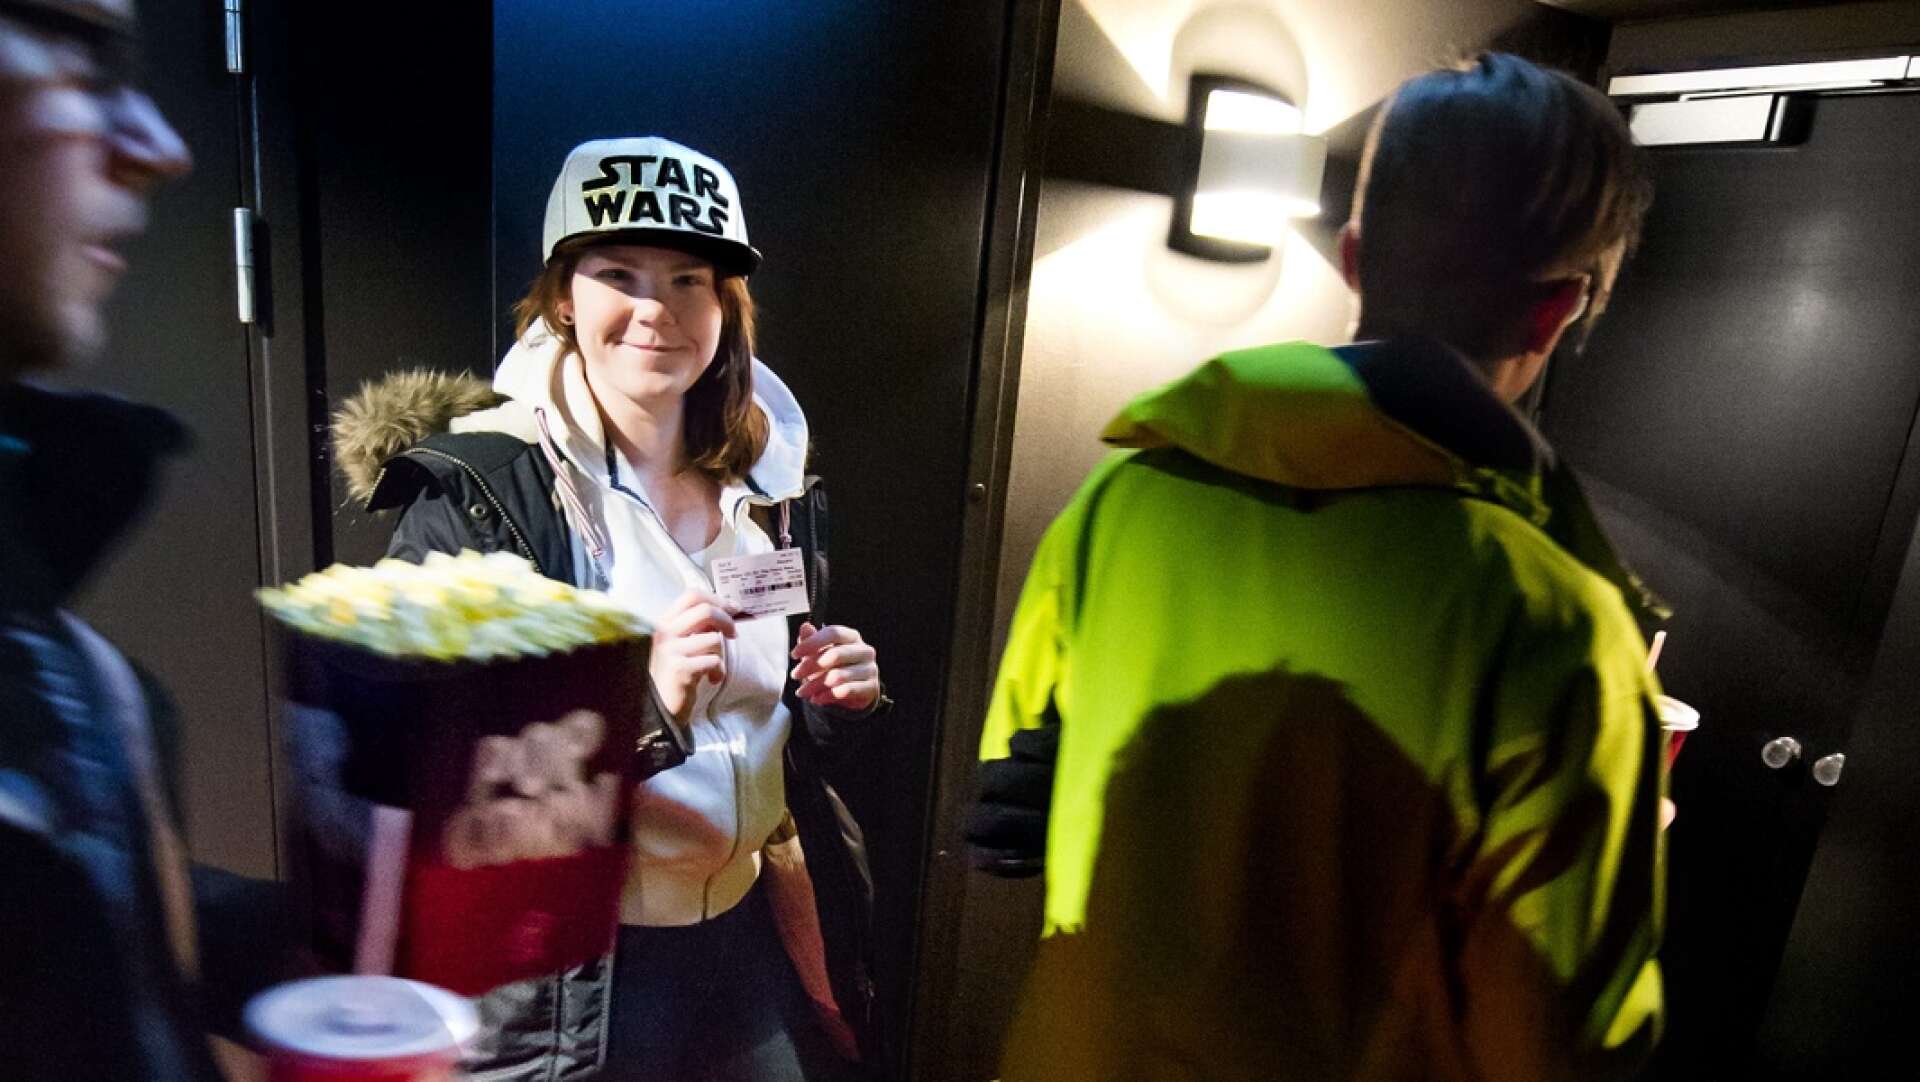 Den 16:e december 2015 hade Star Wars premiär på filmstaden i Karlstad. Emelie Andersson var en av de ca: 1500 som skulle se filmen den dagen.